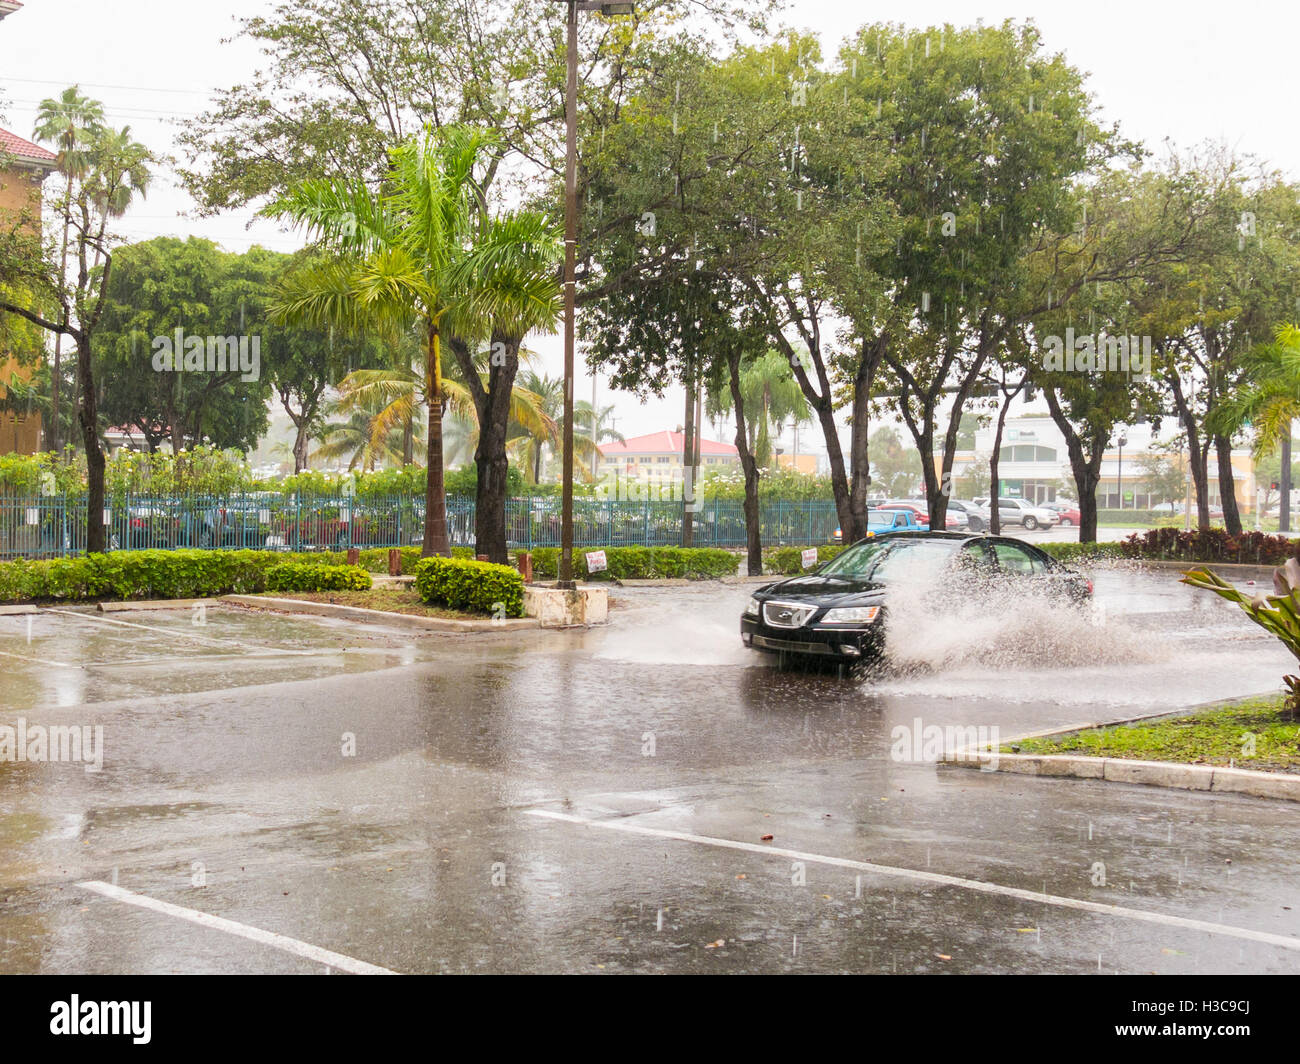 Voiture roulant dans de fortes précipitations pendant la tempête tropicale dans la région de Fort Lauderdale, comté de Broward, Floride, USA Banque D'Images